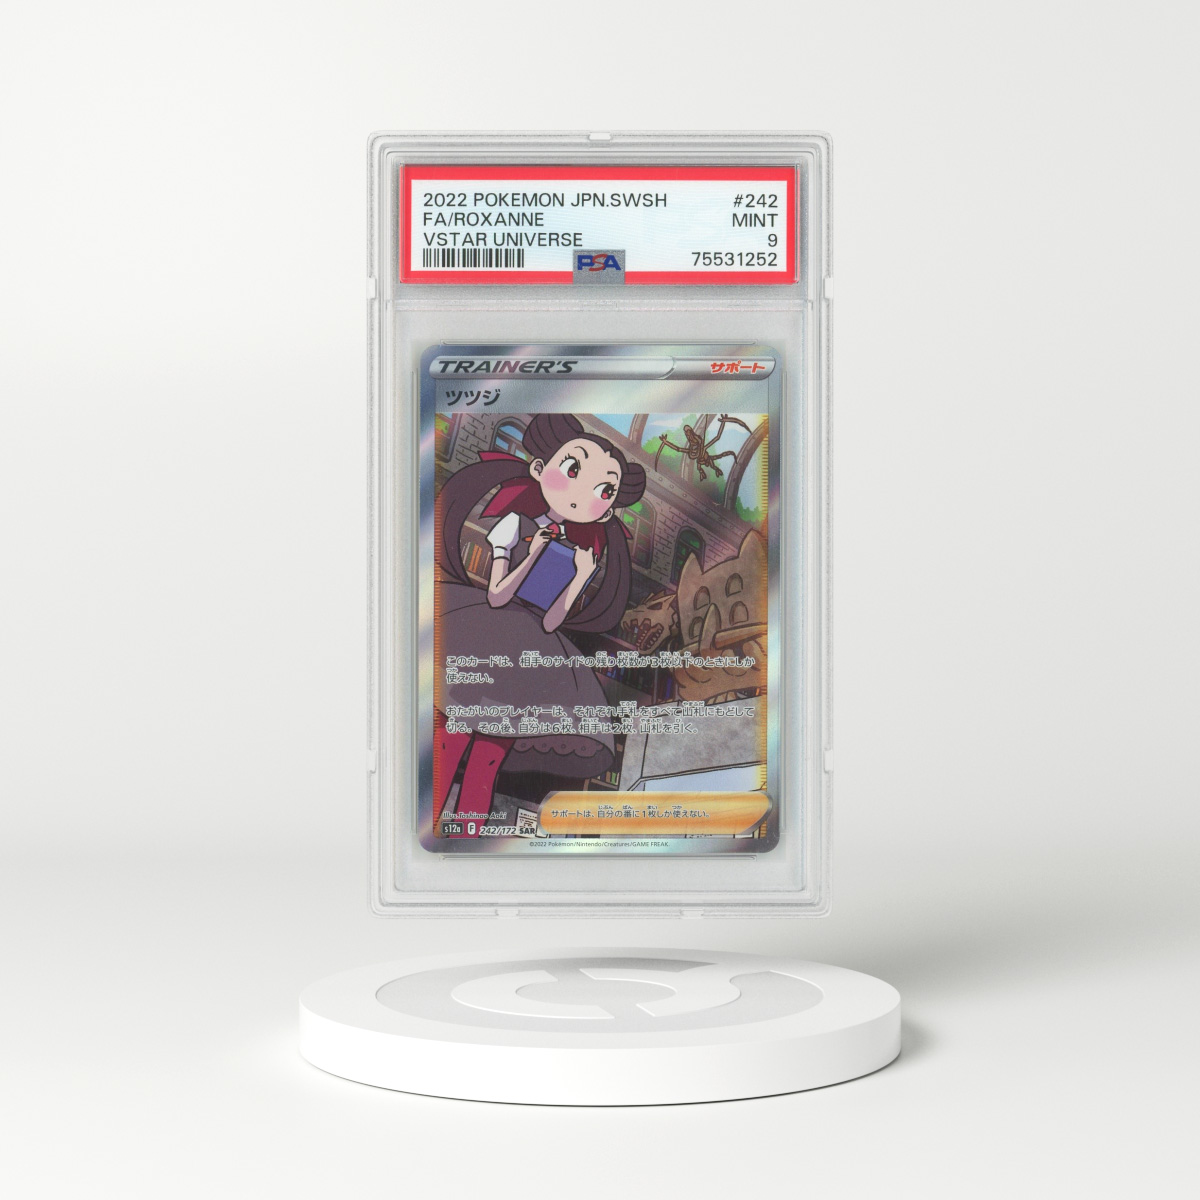 Carta Pokemon Radiant Alakazam Psa 9 Holo Incandescent Arcana - Vinted